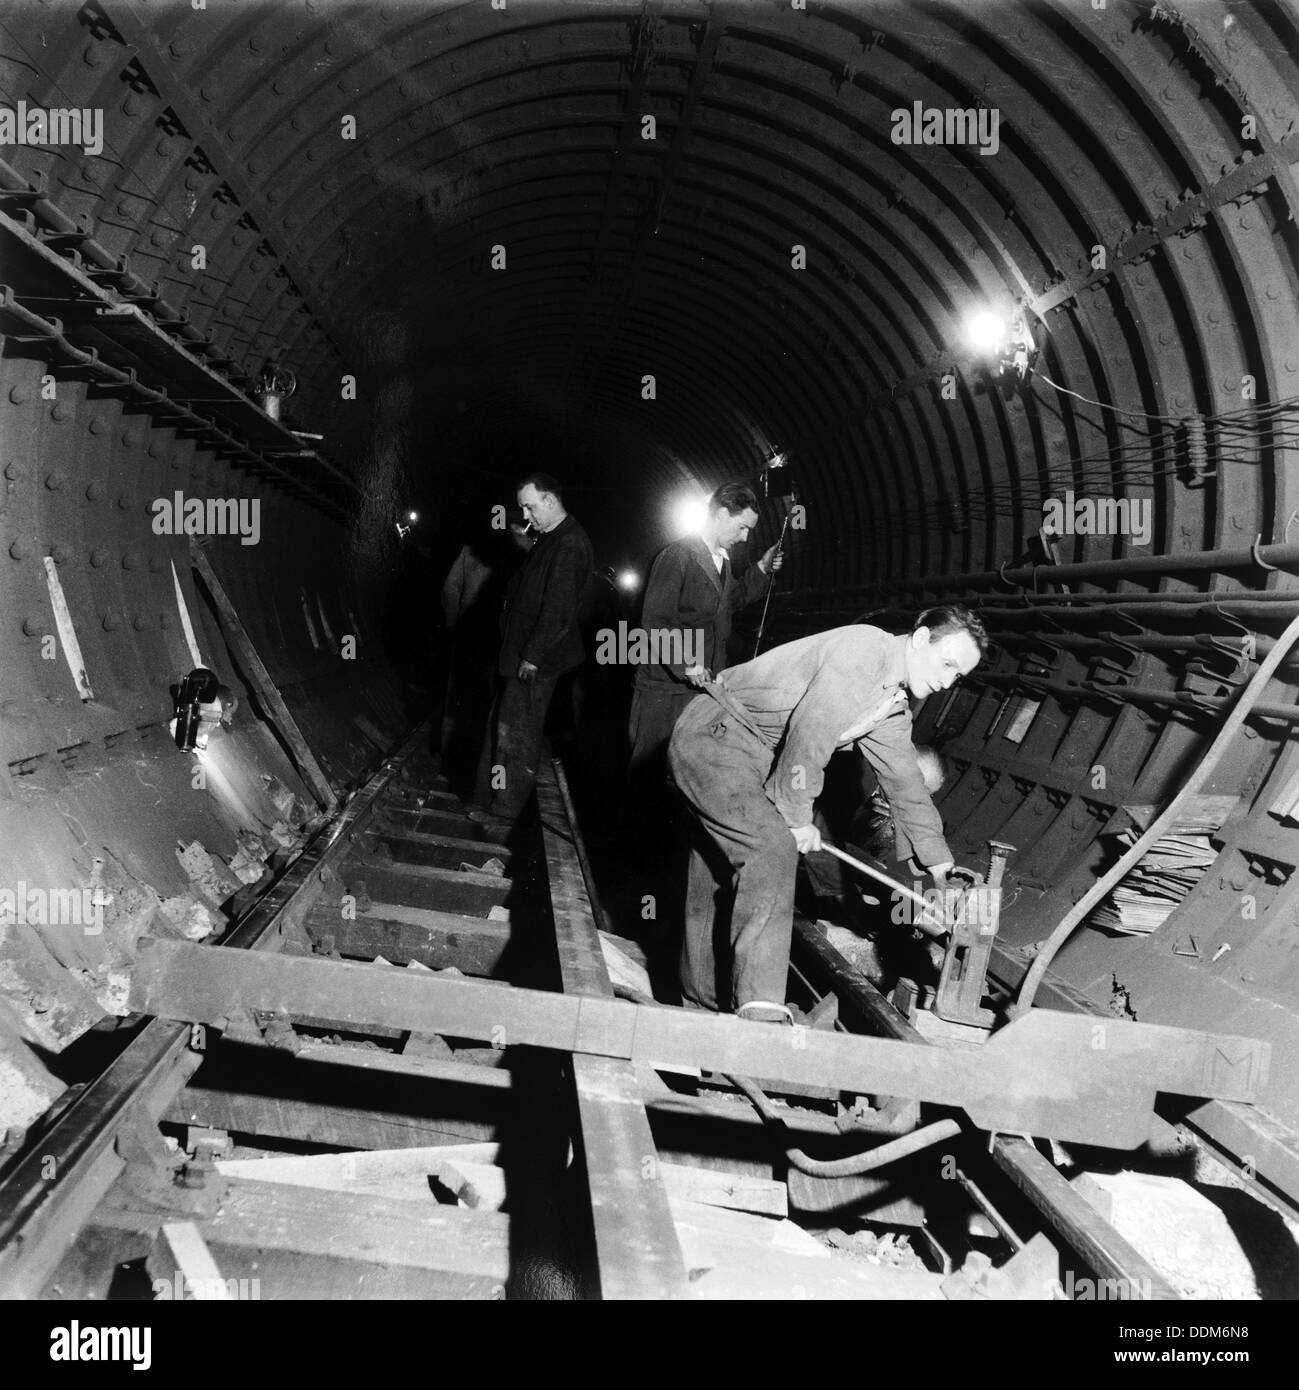 Repairing underground train tracks, London, 1955. Artist: Henry Grant Stock Photo